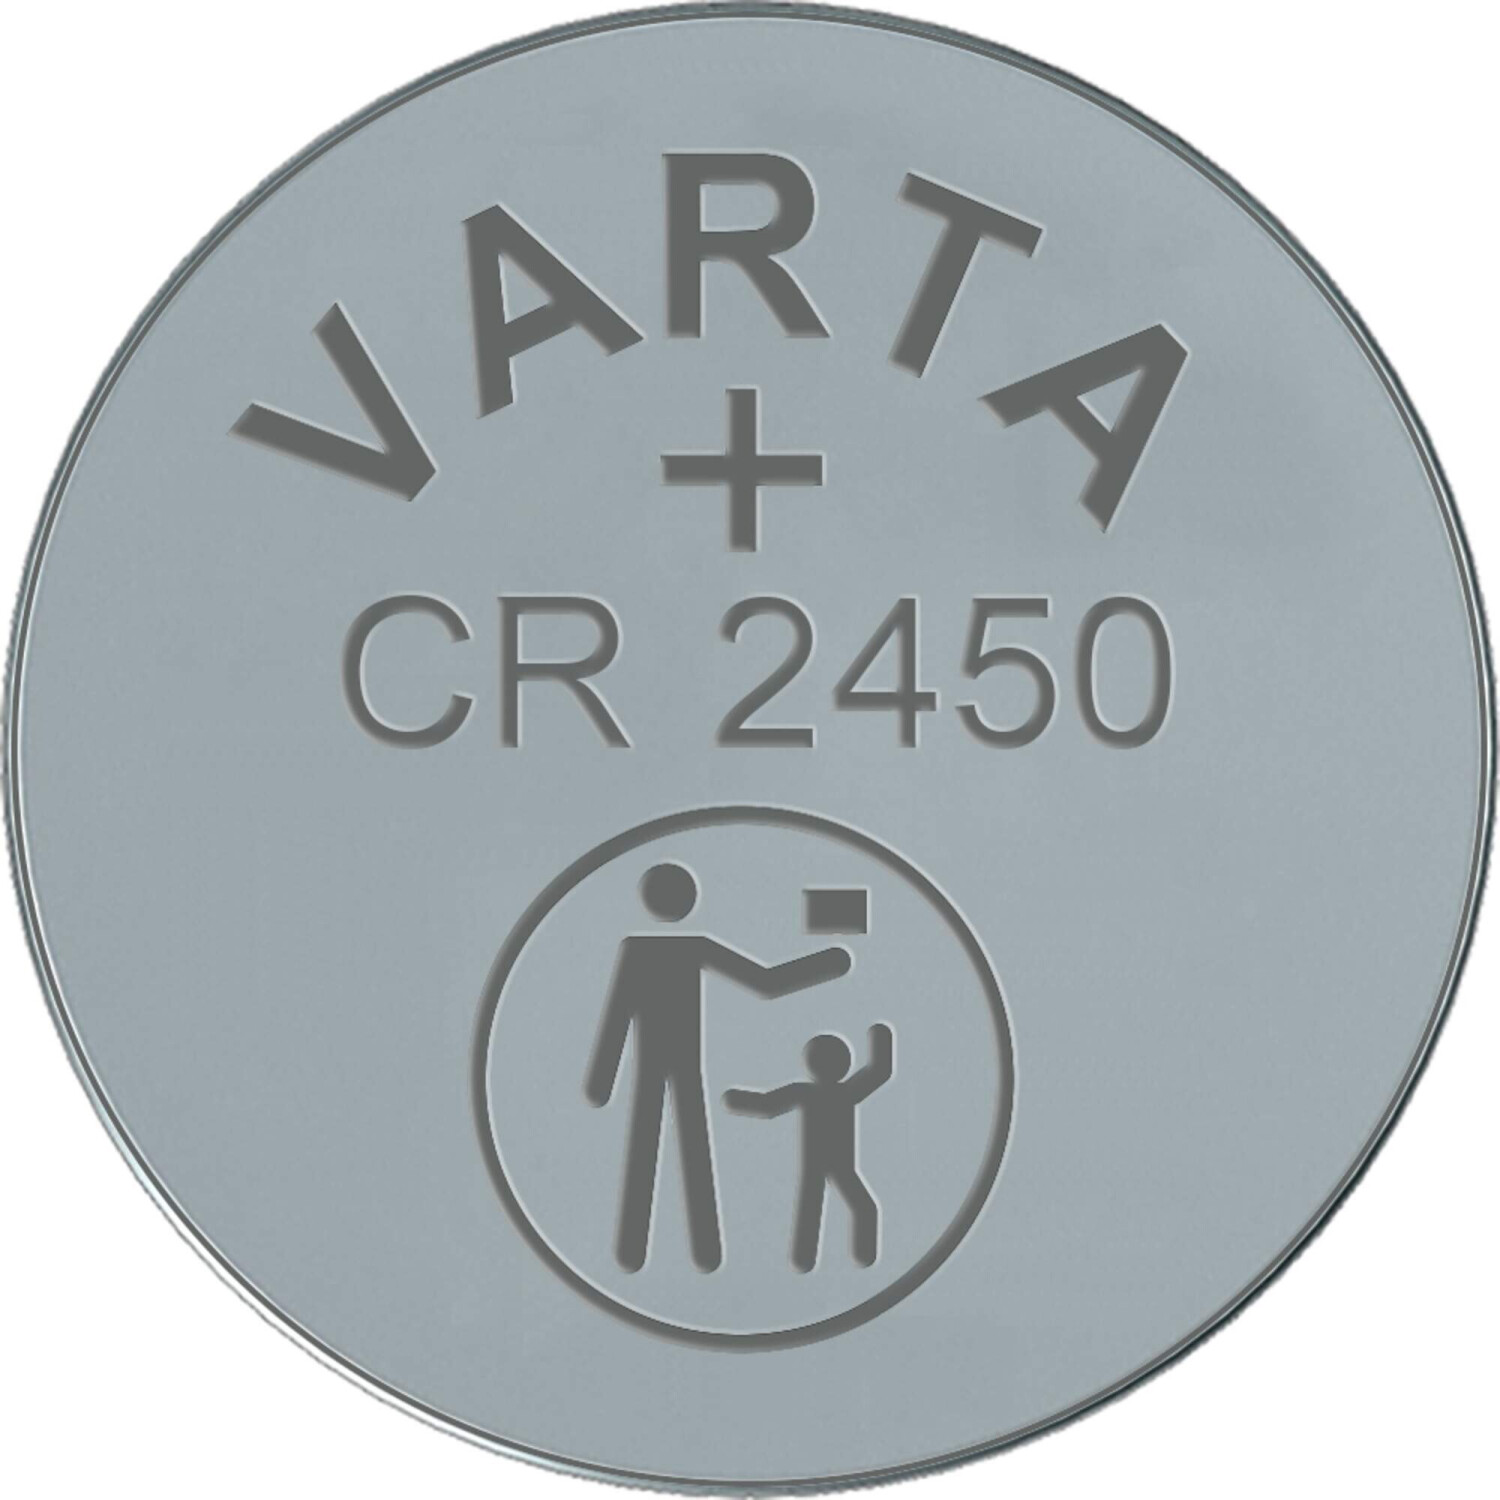 VARTA Knopfzelle Lithium, CR2450, 3V 2 Stück Lithium-Ionen